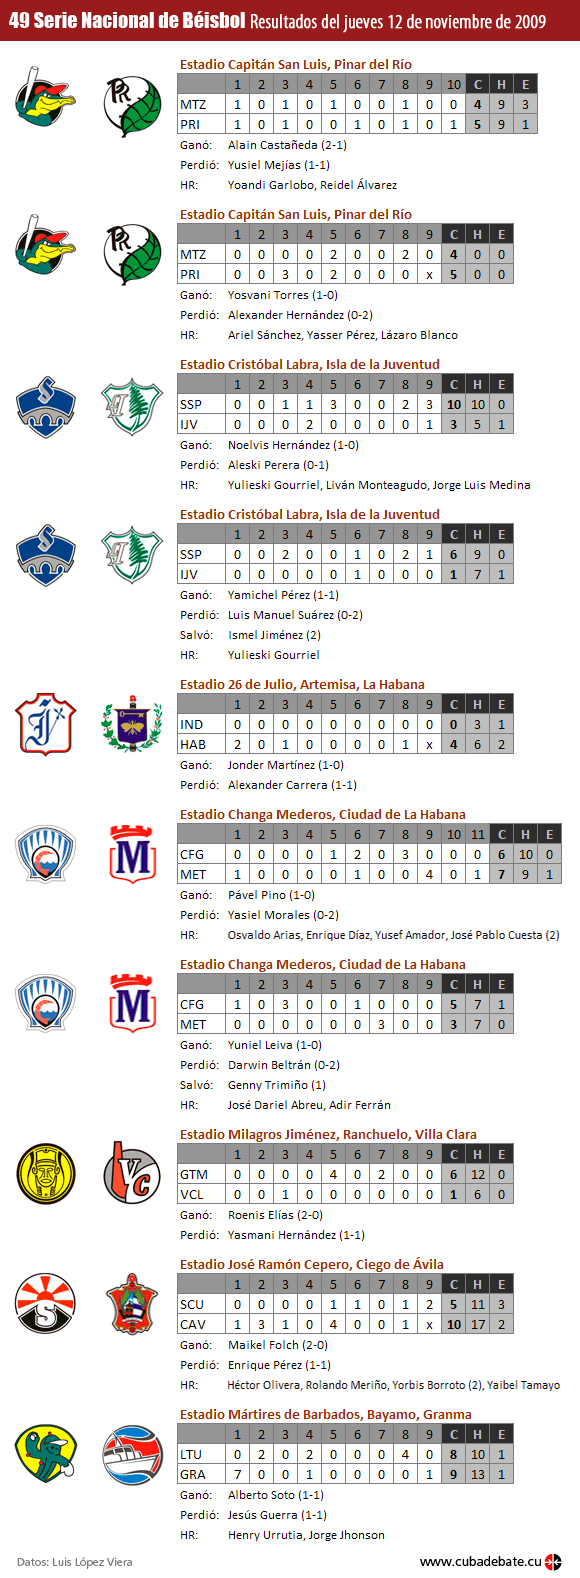 Infografia: Resultados del jueves 12 de noviembre de 2009 en la Serie Nacional de Beisbol, Cuba